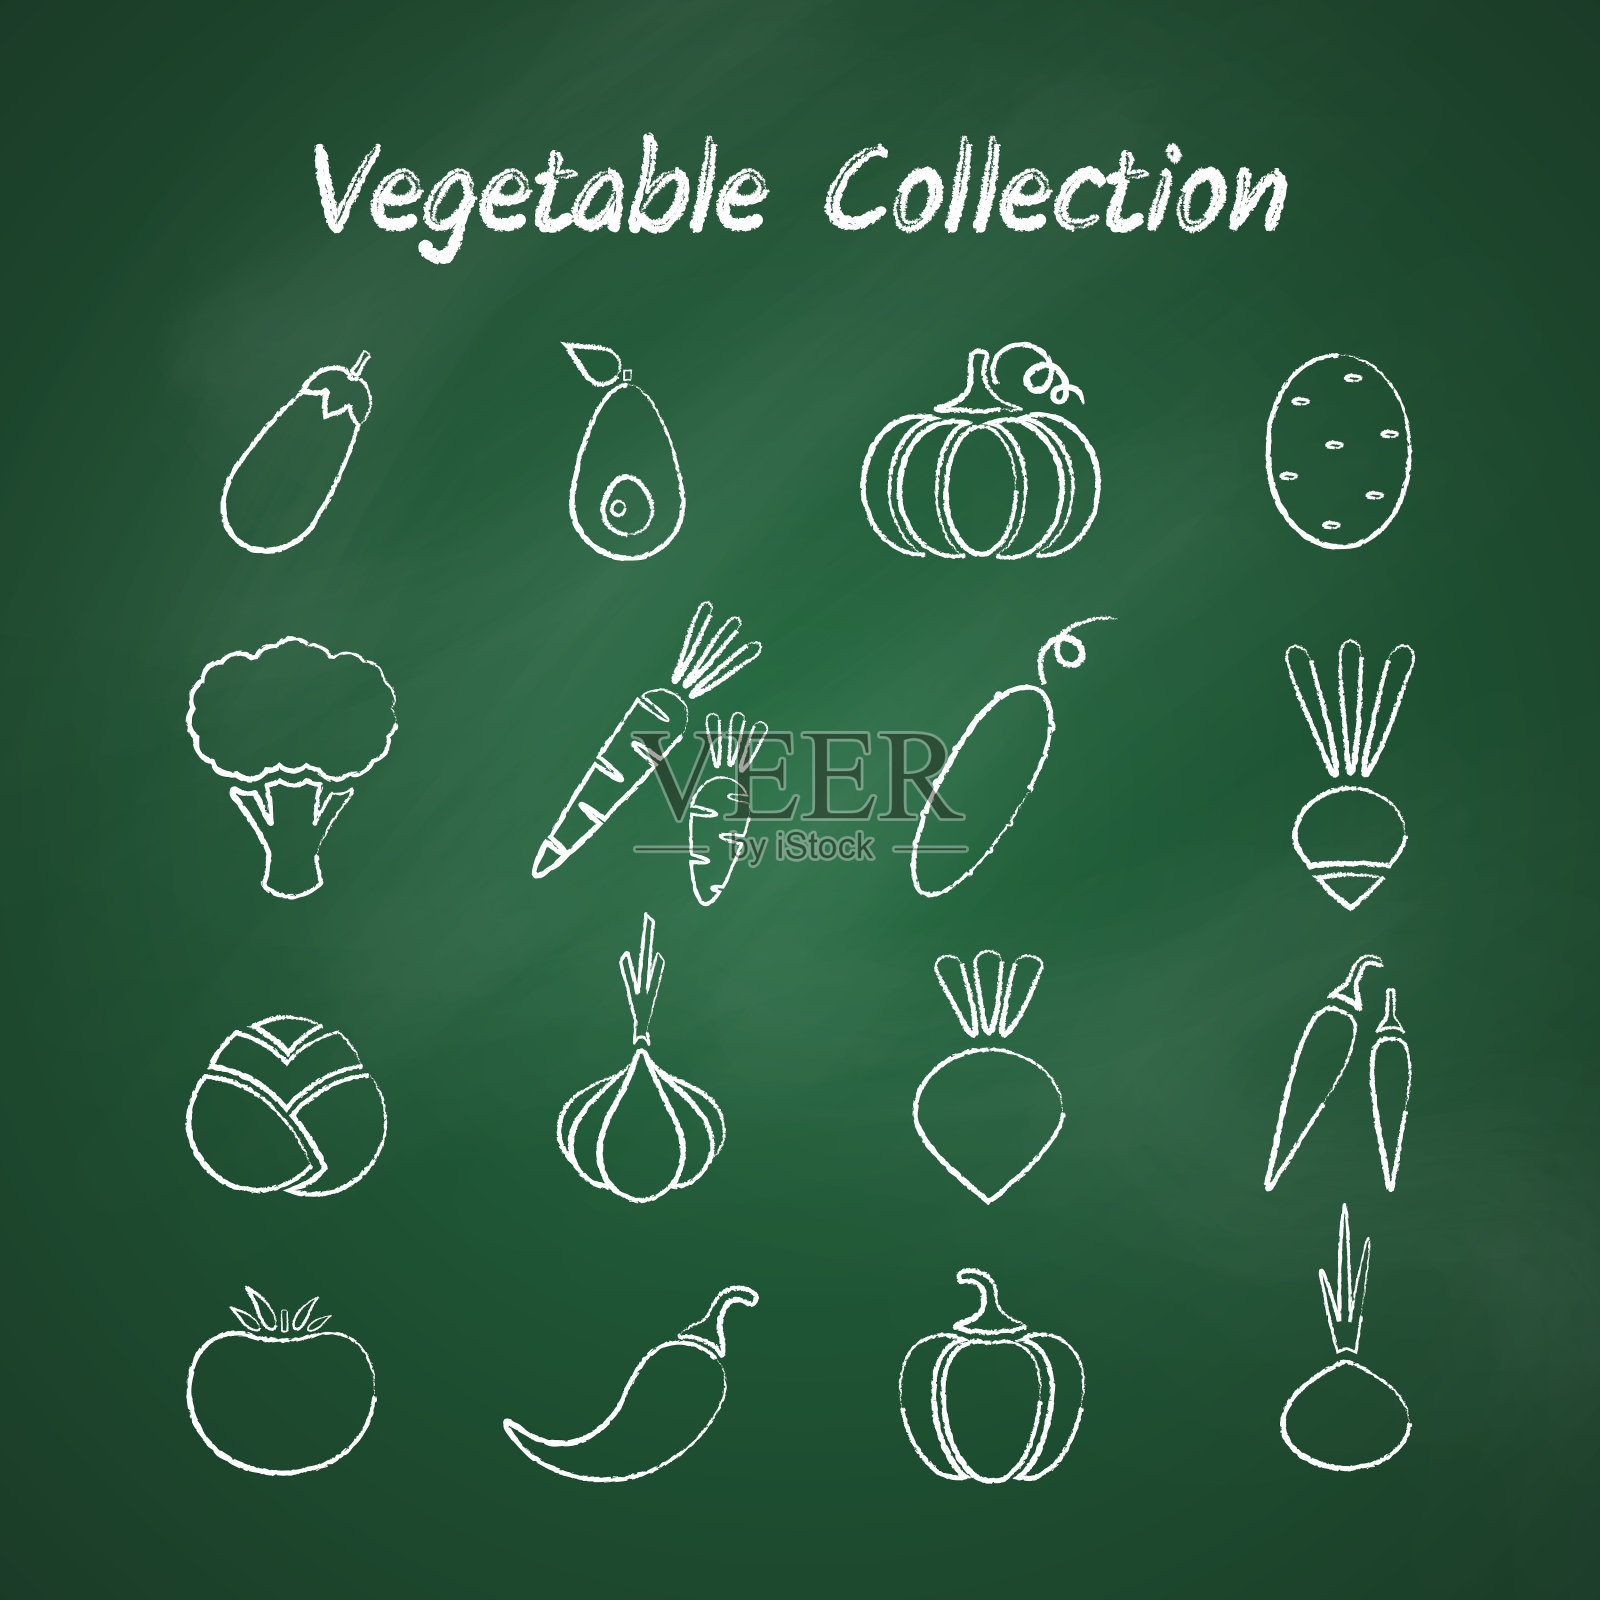 粉笔风格轮廓蔬菜符号集插画图片素材